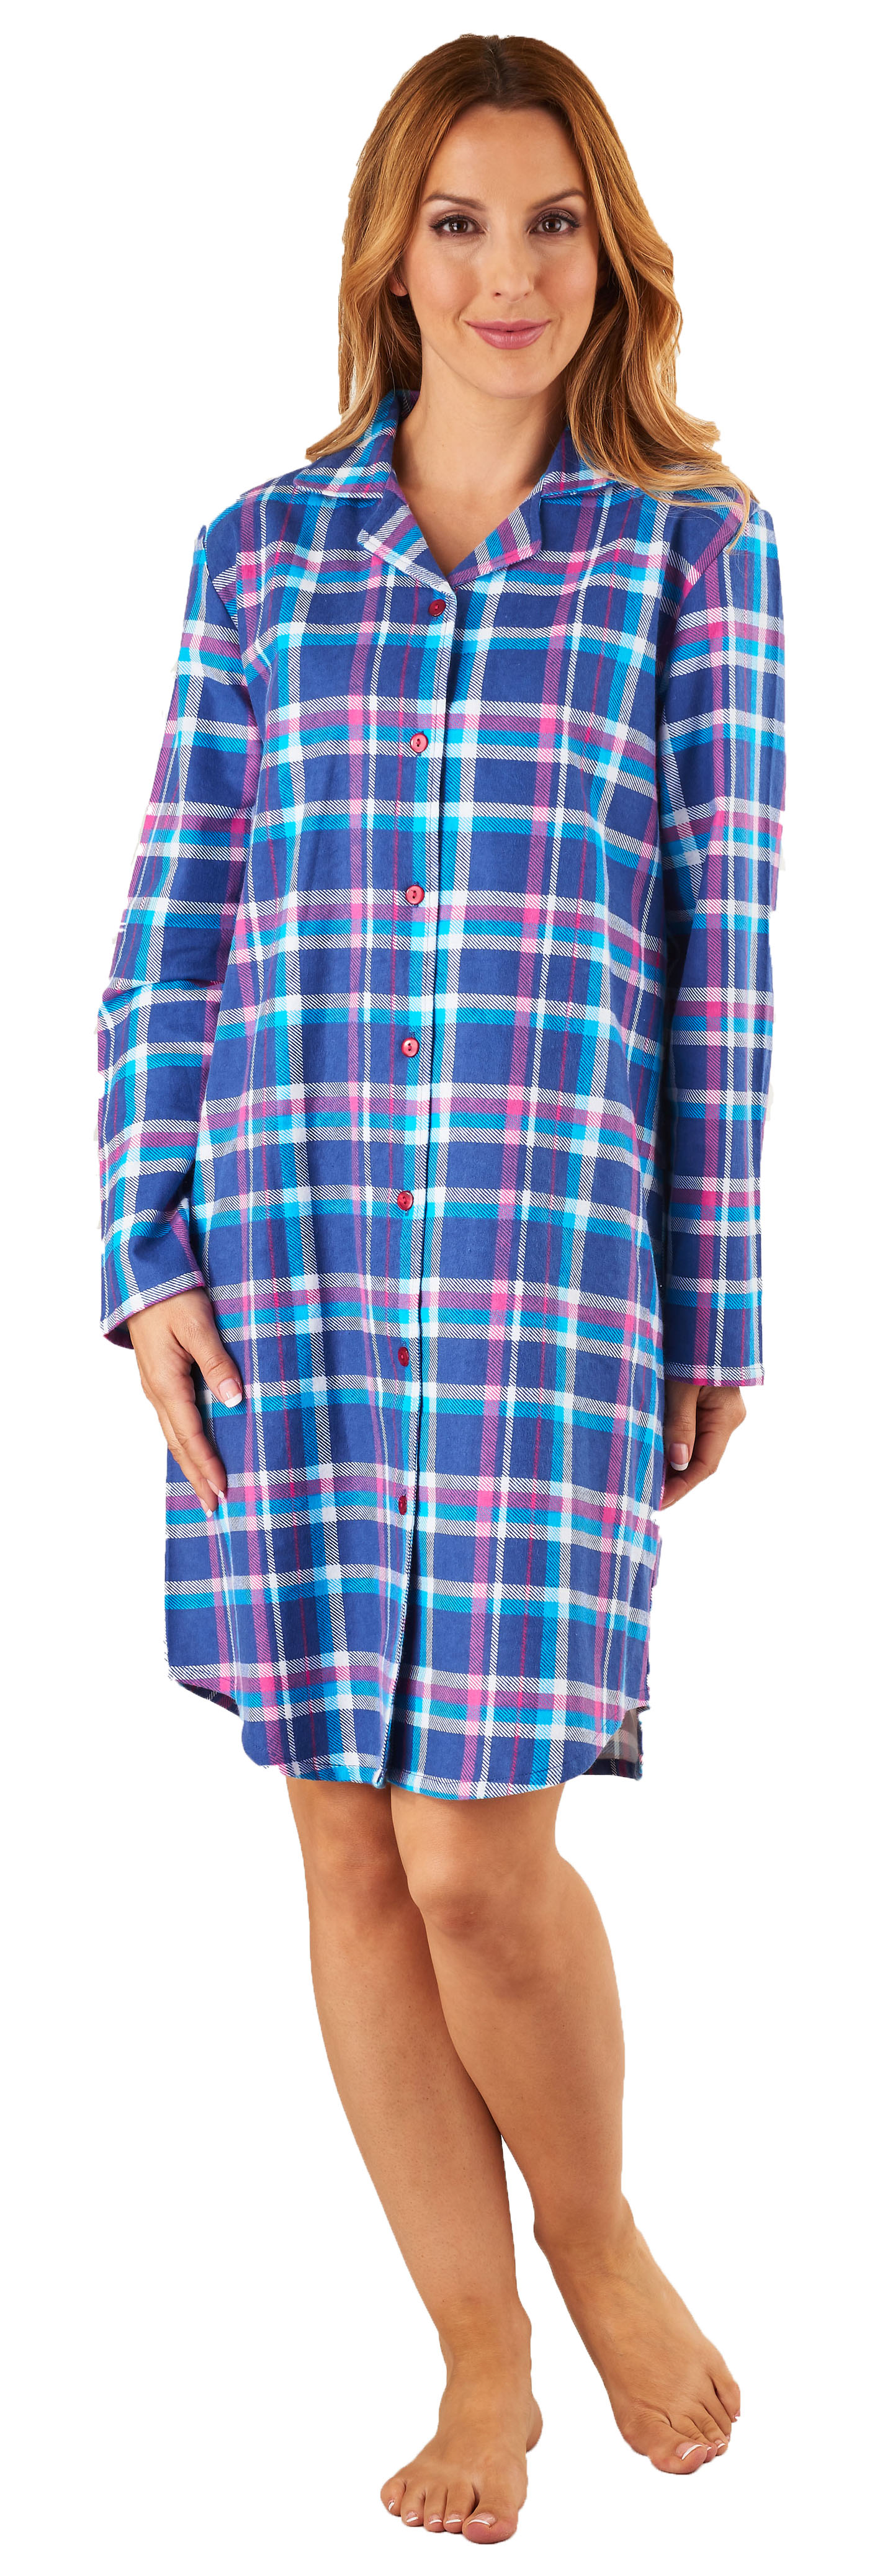 Slenderella Woven Checked Flannel Nightshirt.